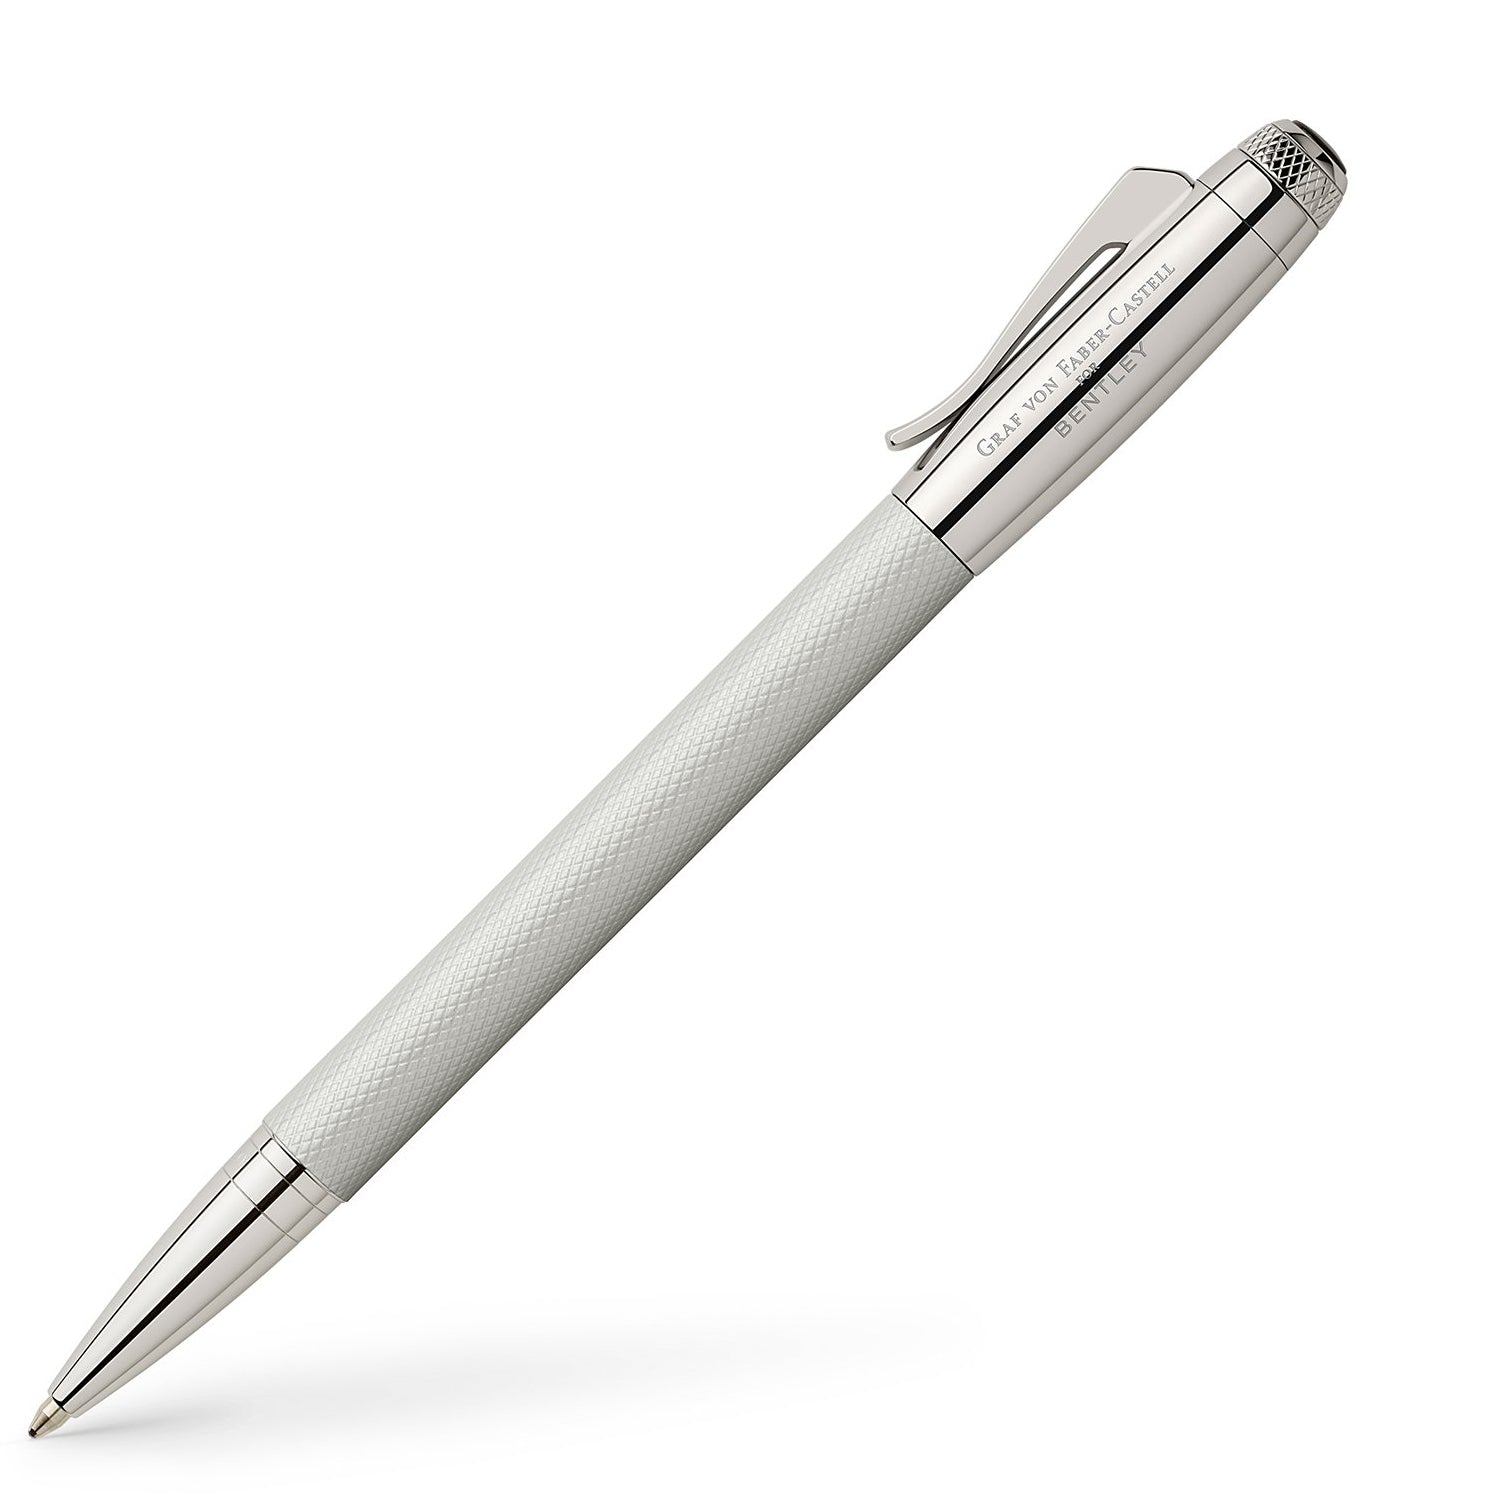 Graf Von Faber-Castell for Bentley Ballpoint pens